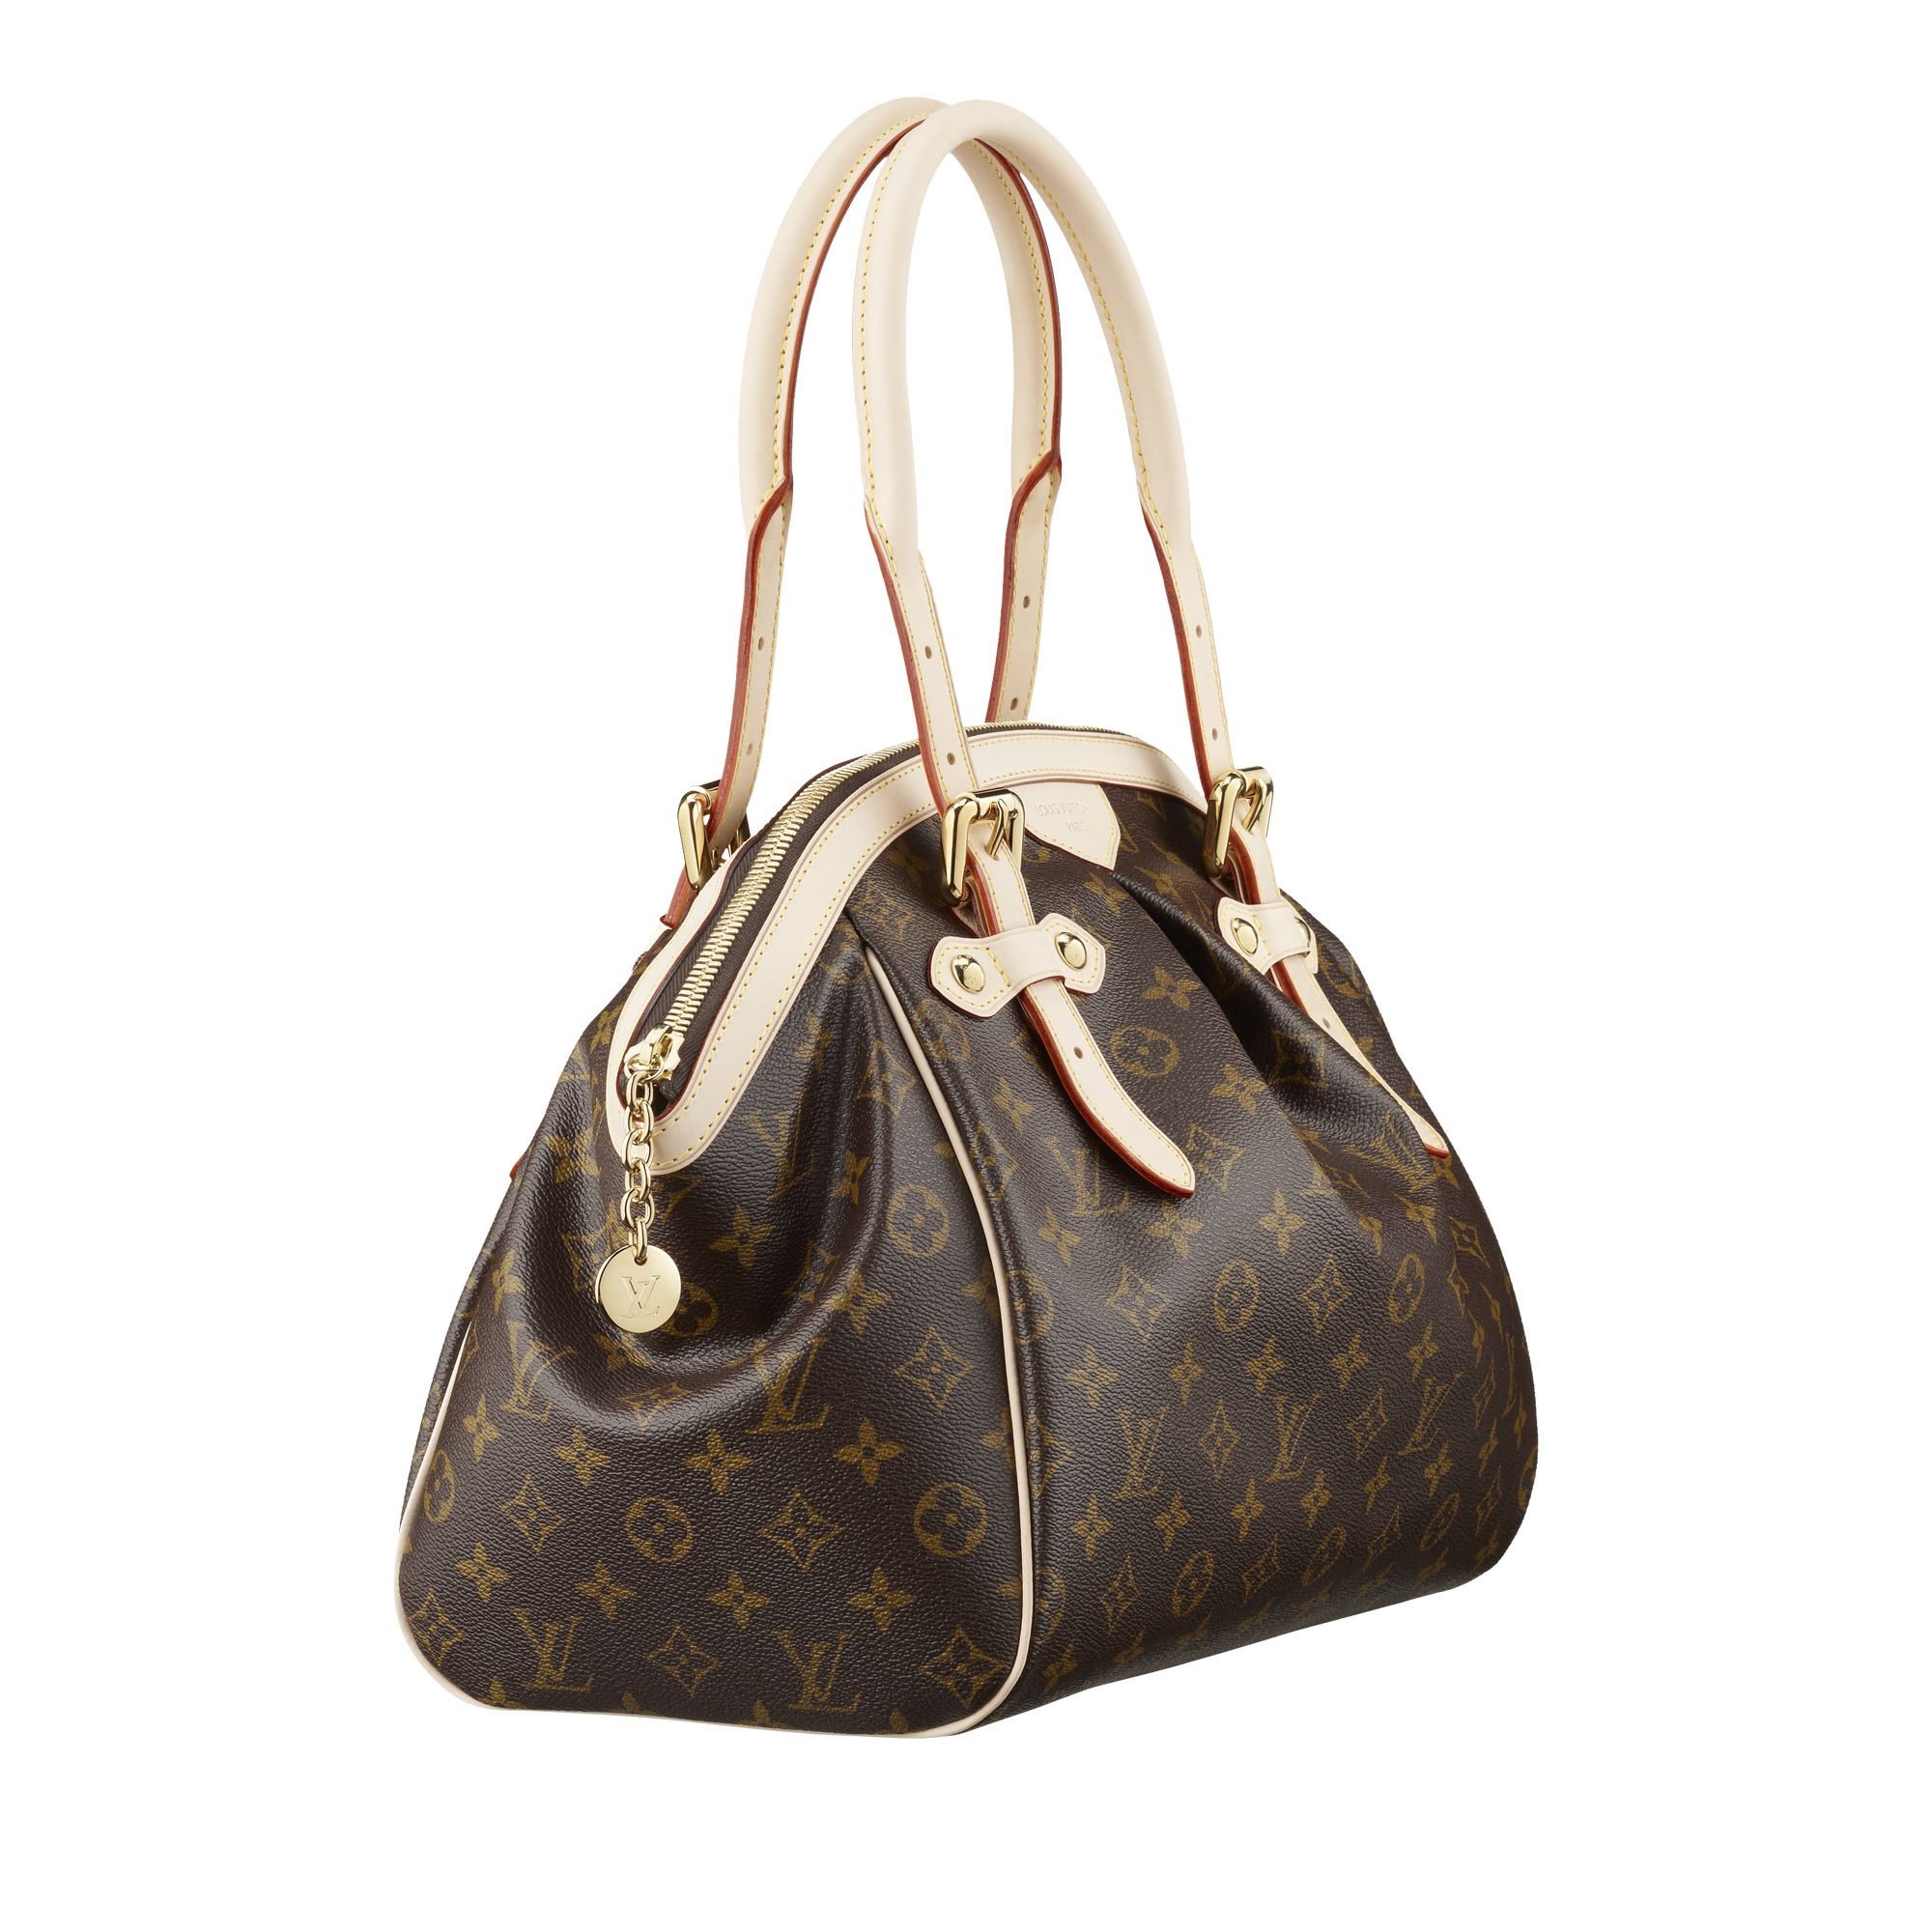 Louis Vuitton Women Bag Png Image - Purse, Transparent background PNG HD thumbnail